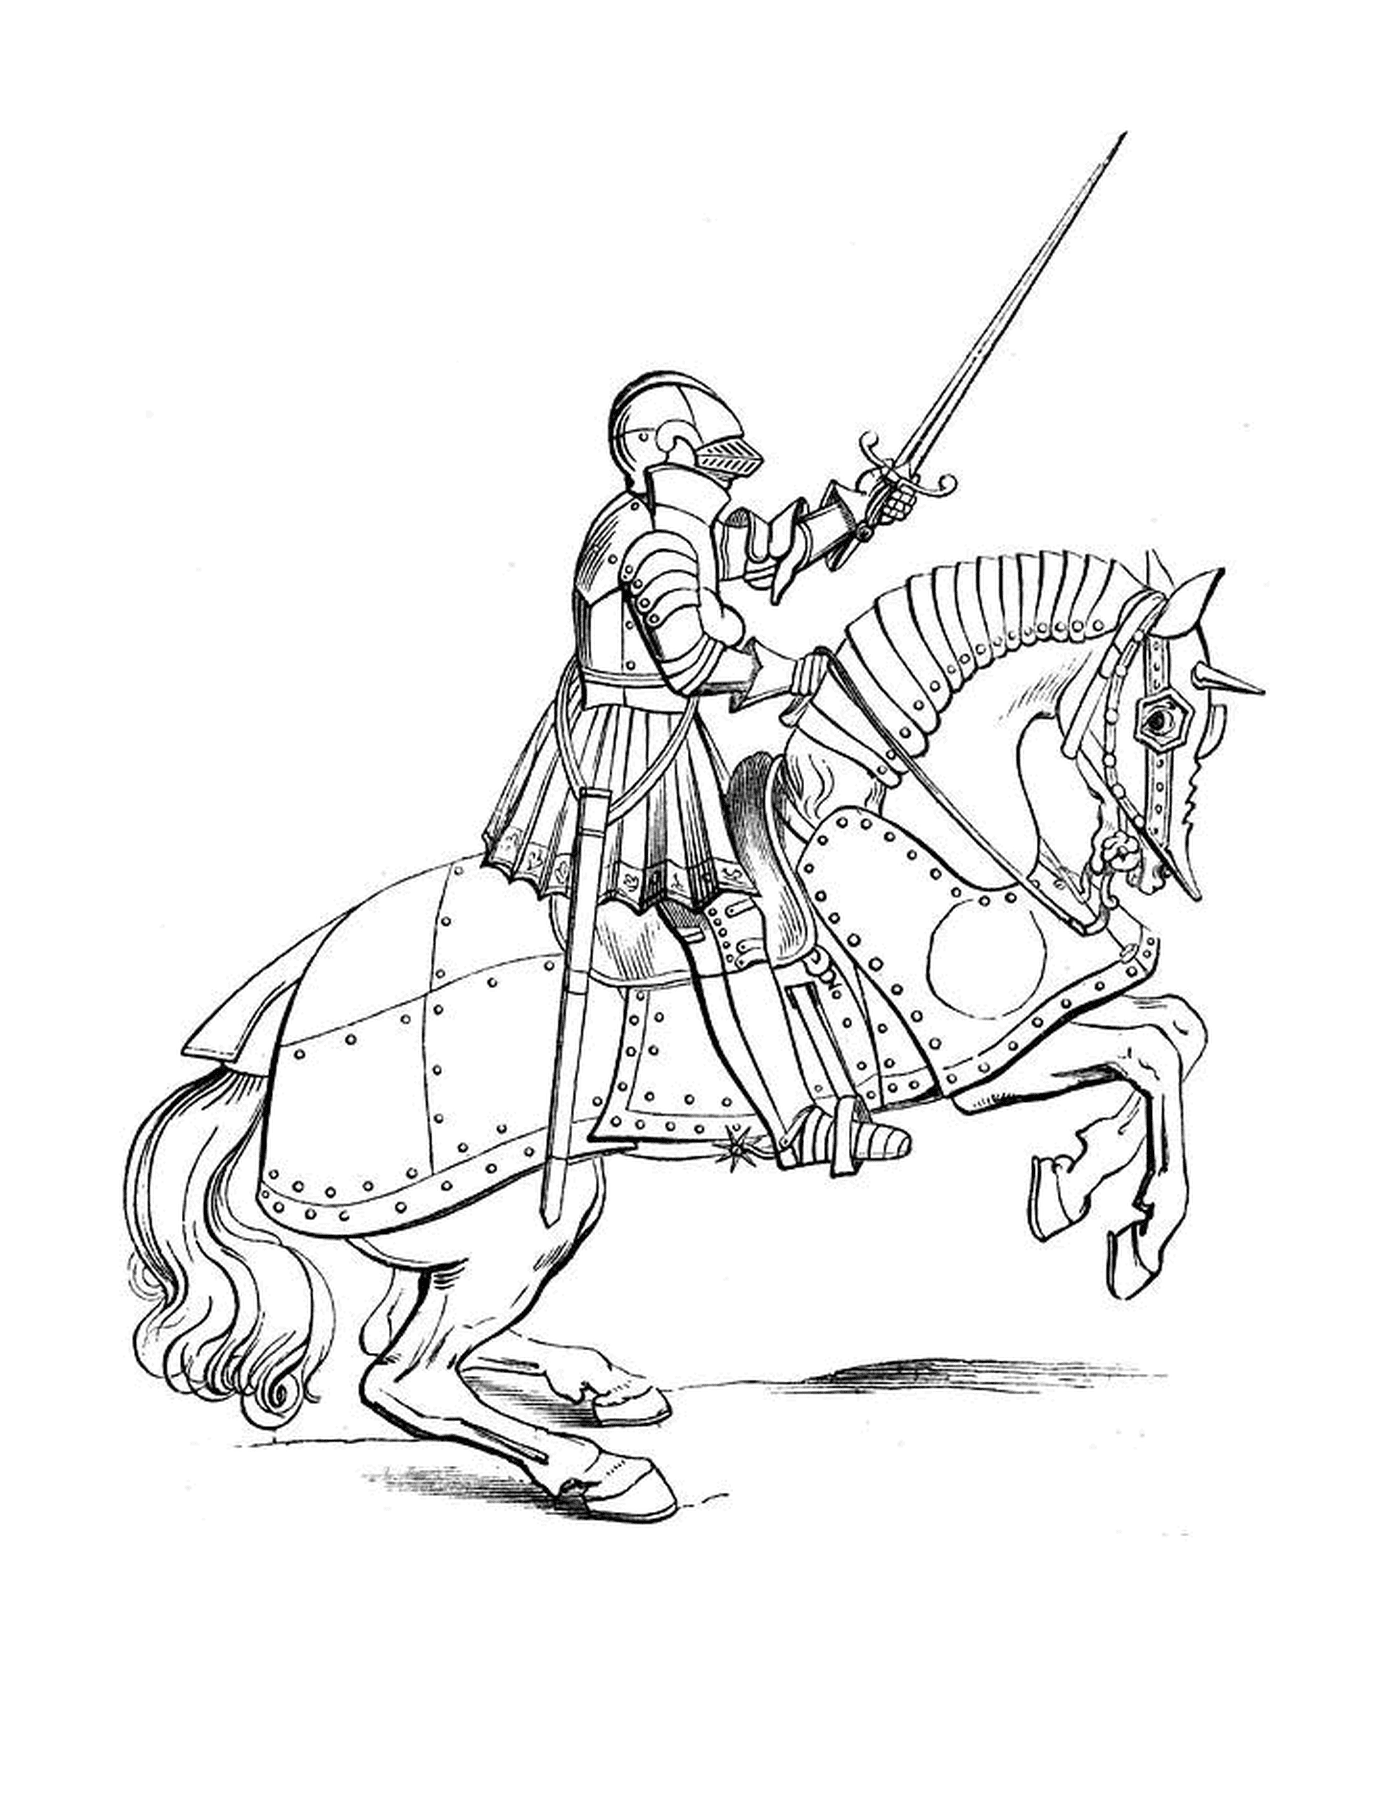  A man on a horse 